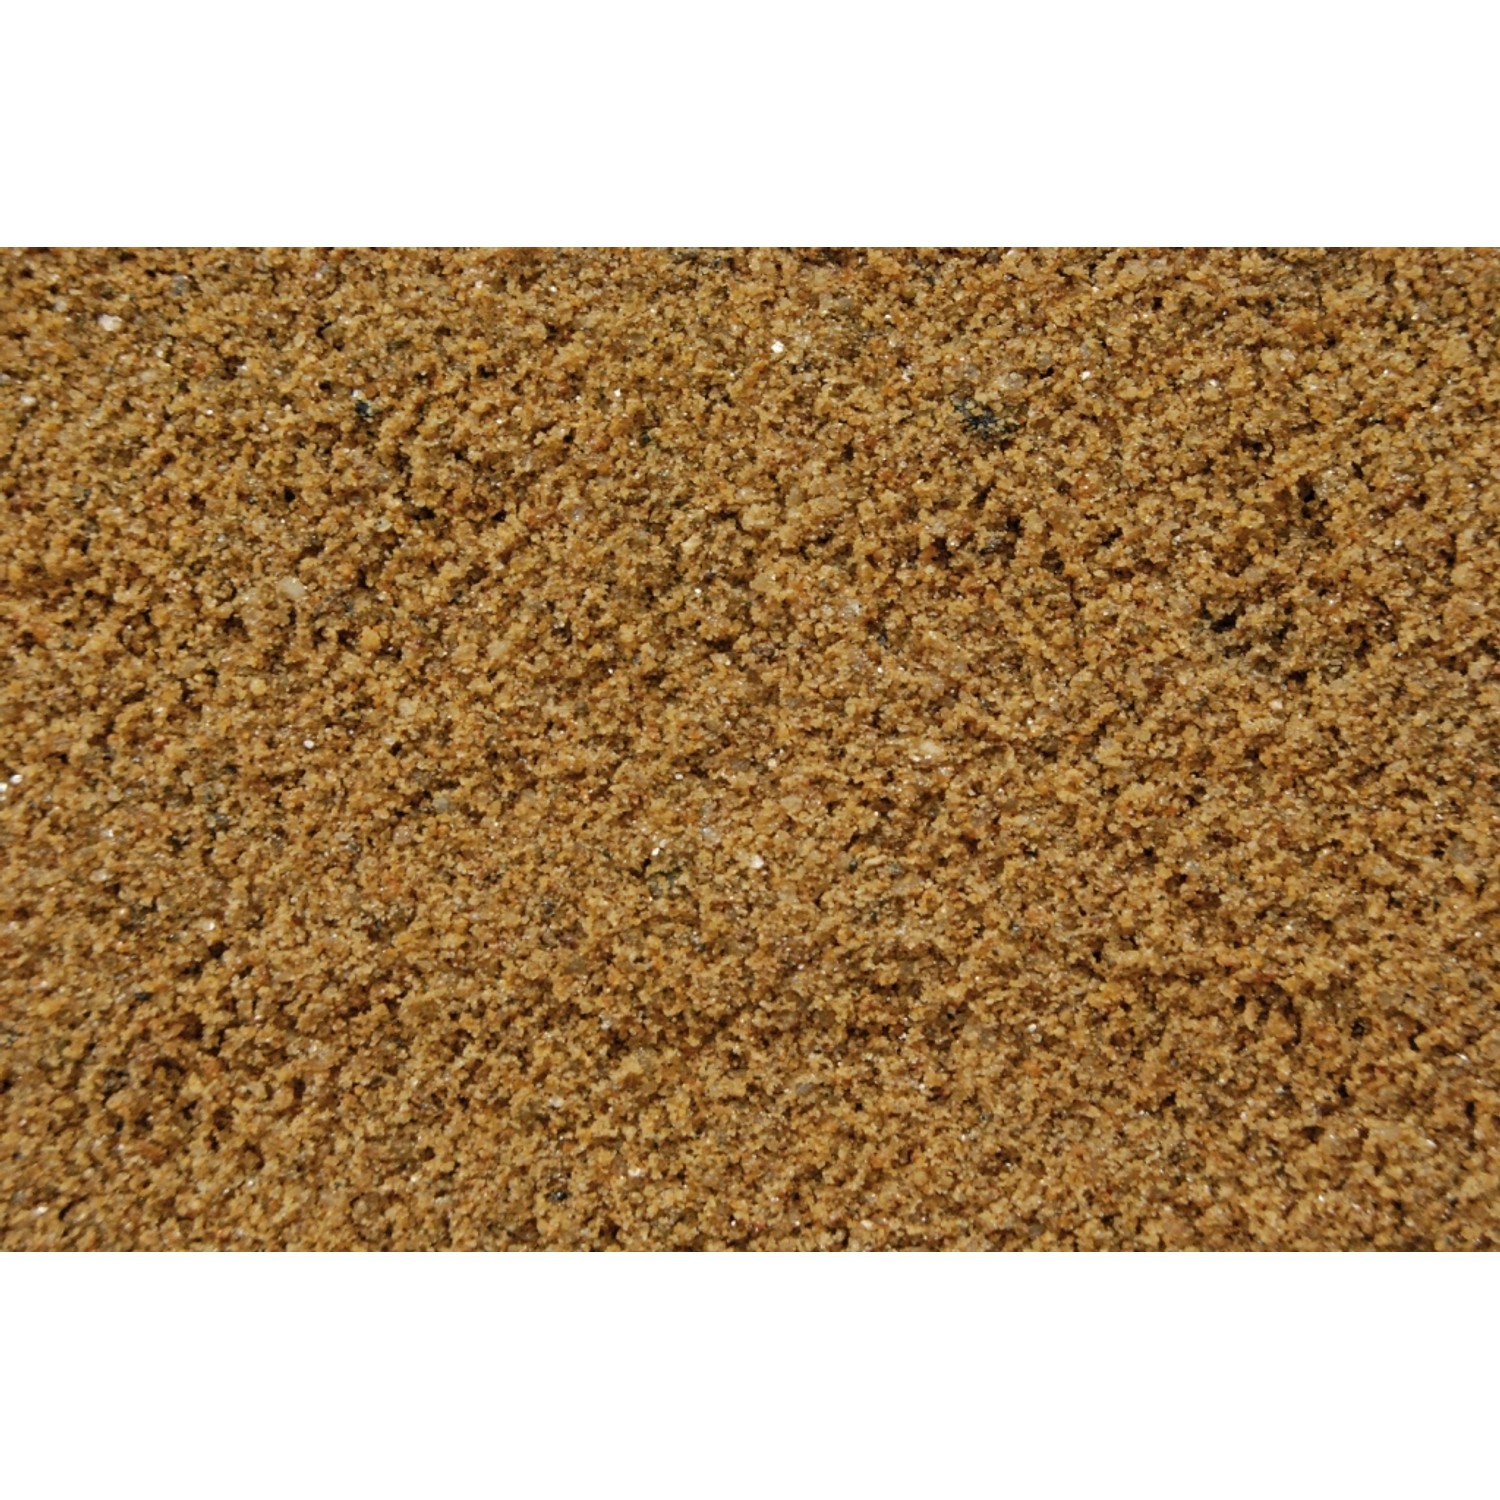 Spielsand Gold-Braun 0,06 - 1 mm 1000 kg Big-Bag von Scherf